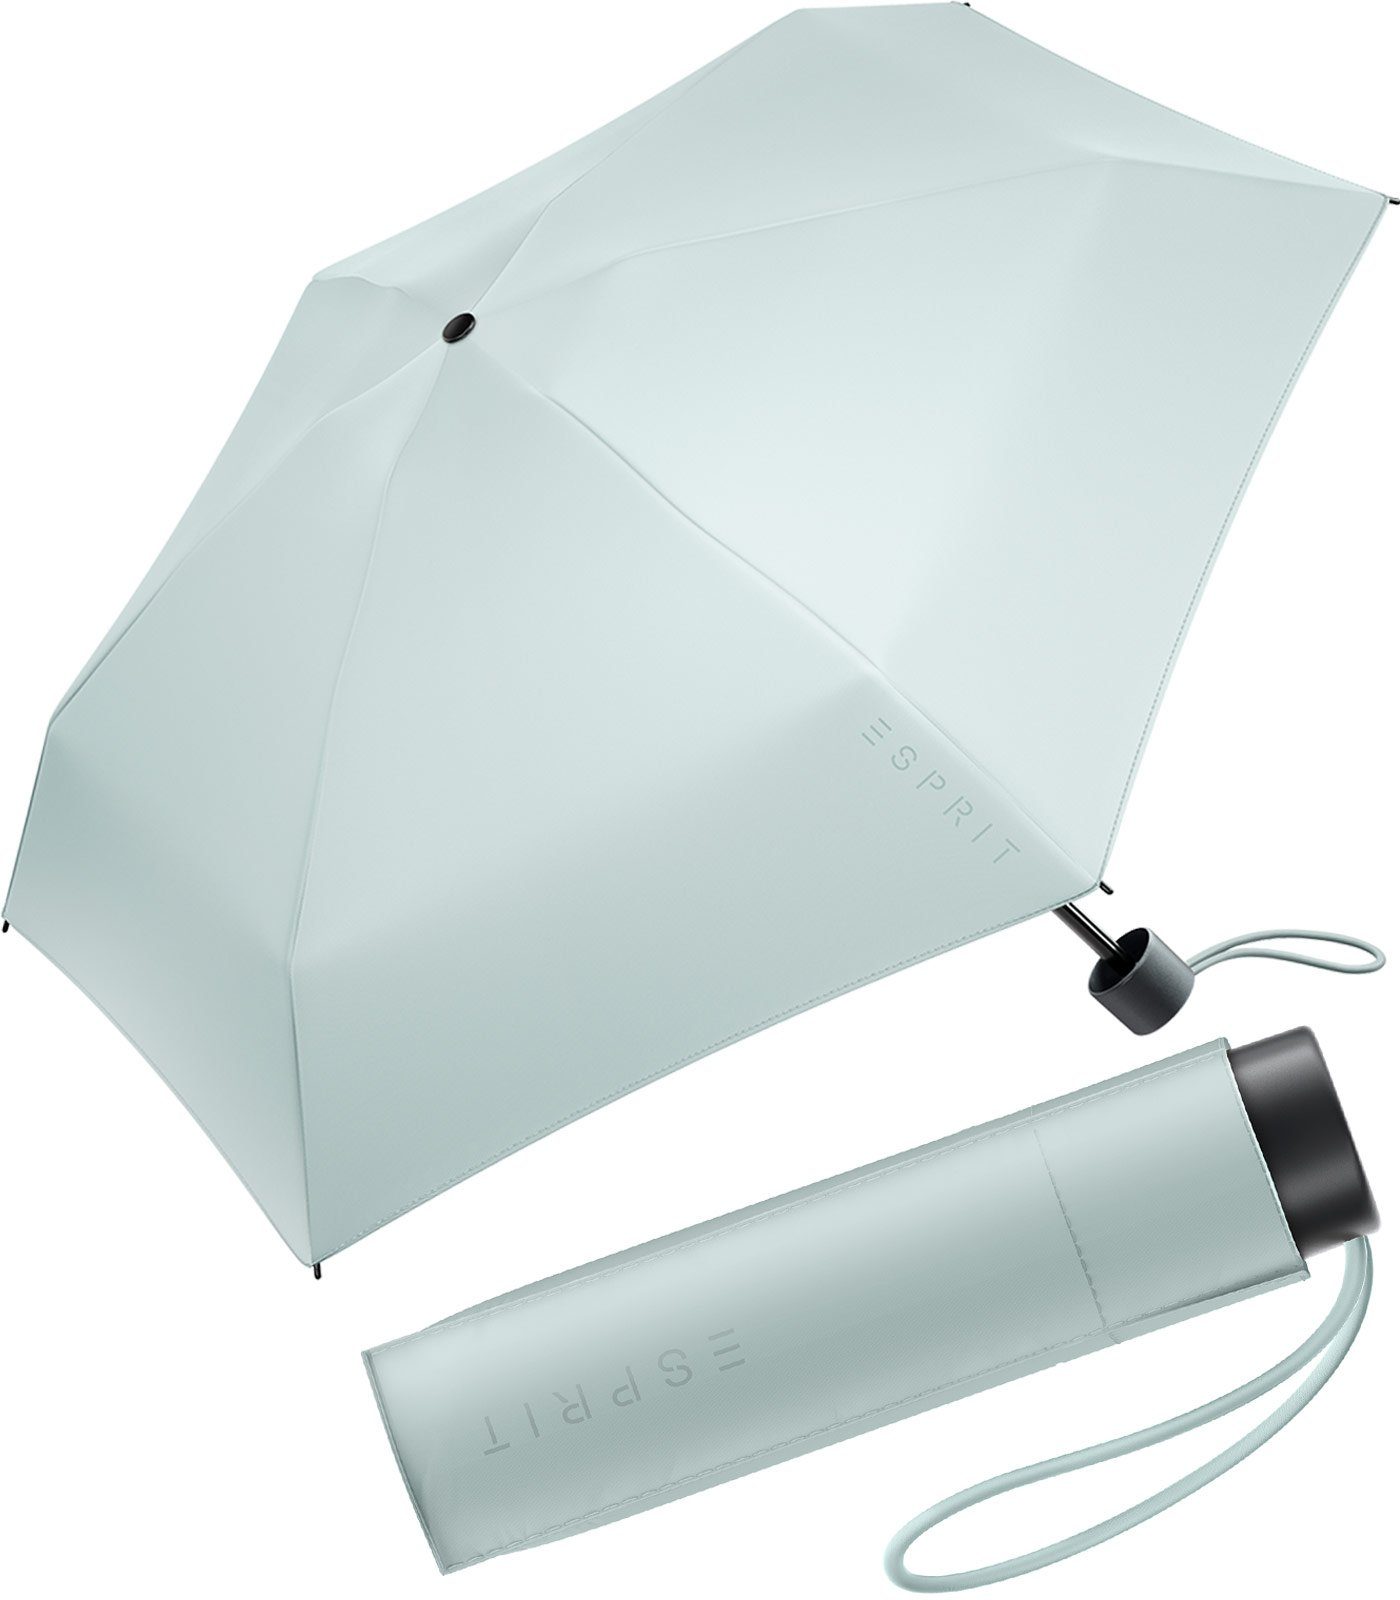 2022, in Esprit Super Regenschirm Damen Taschenregenschirm klein, Mini den graublau Trendfarben Petito FJ neuen winzig